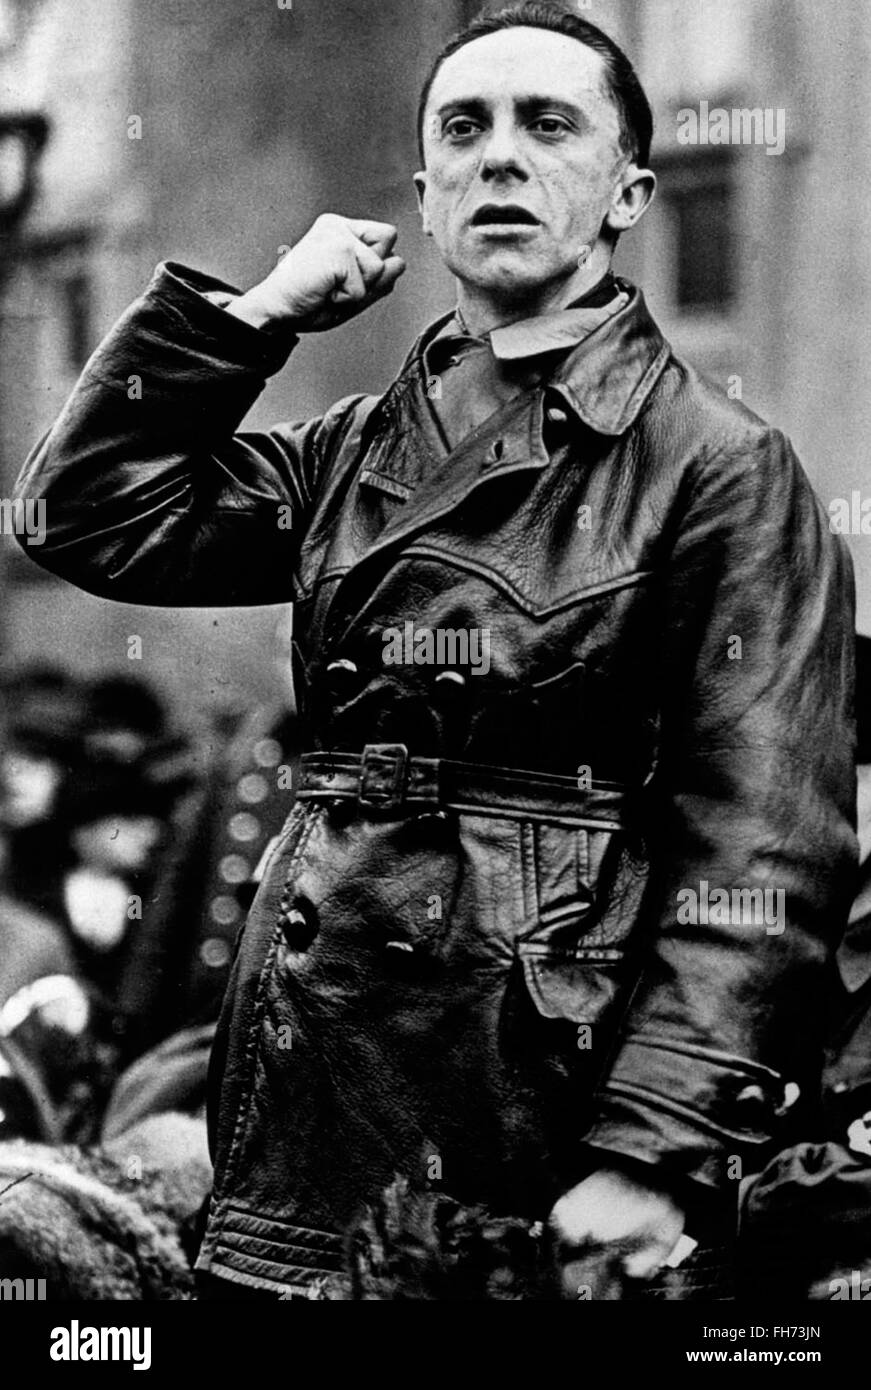 Goebbels Portrait dans un discours - Affiches de propagande nazi allemand - WWII Banque D'Images